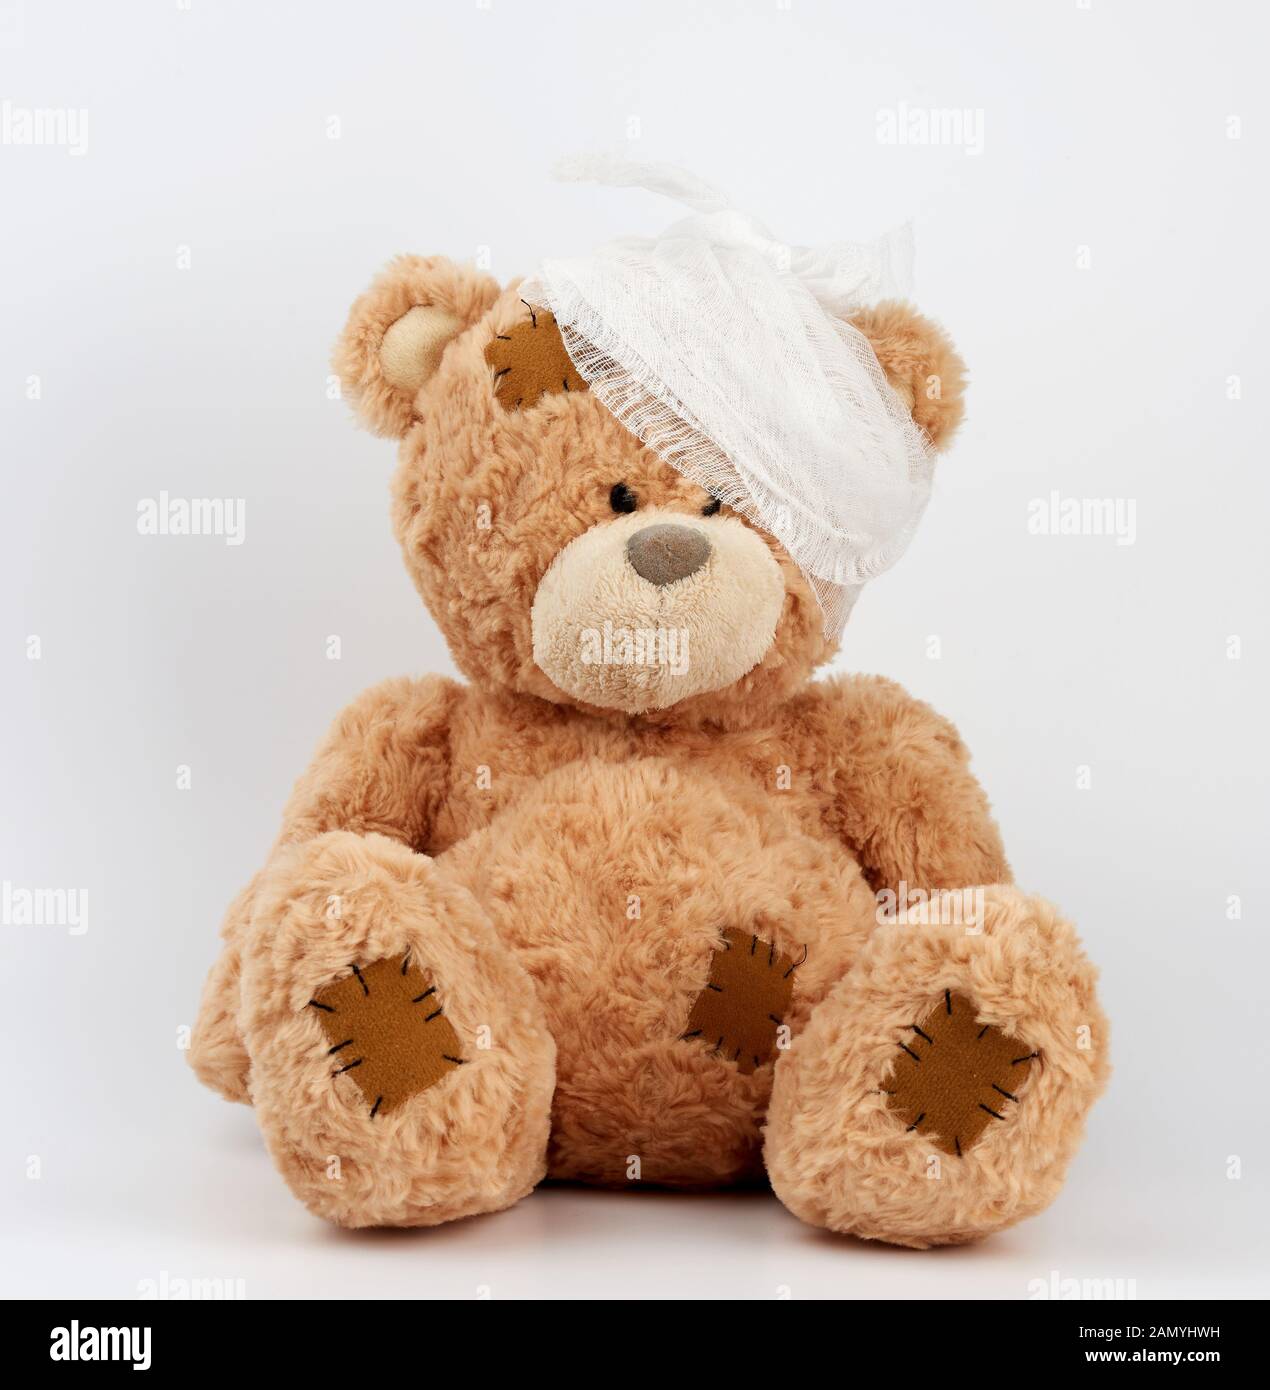 Grand ours en peluche avec une tête bandée dans un bandage médical blanc sur fond blanc, concept du traumatisme des enfants, jouet avec des correctifs Banque D'Images